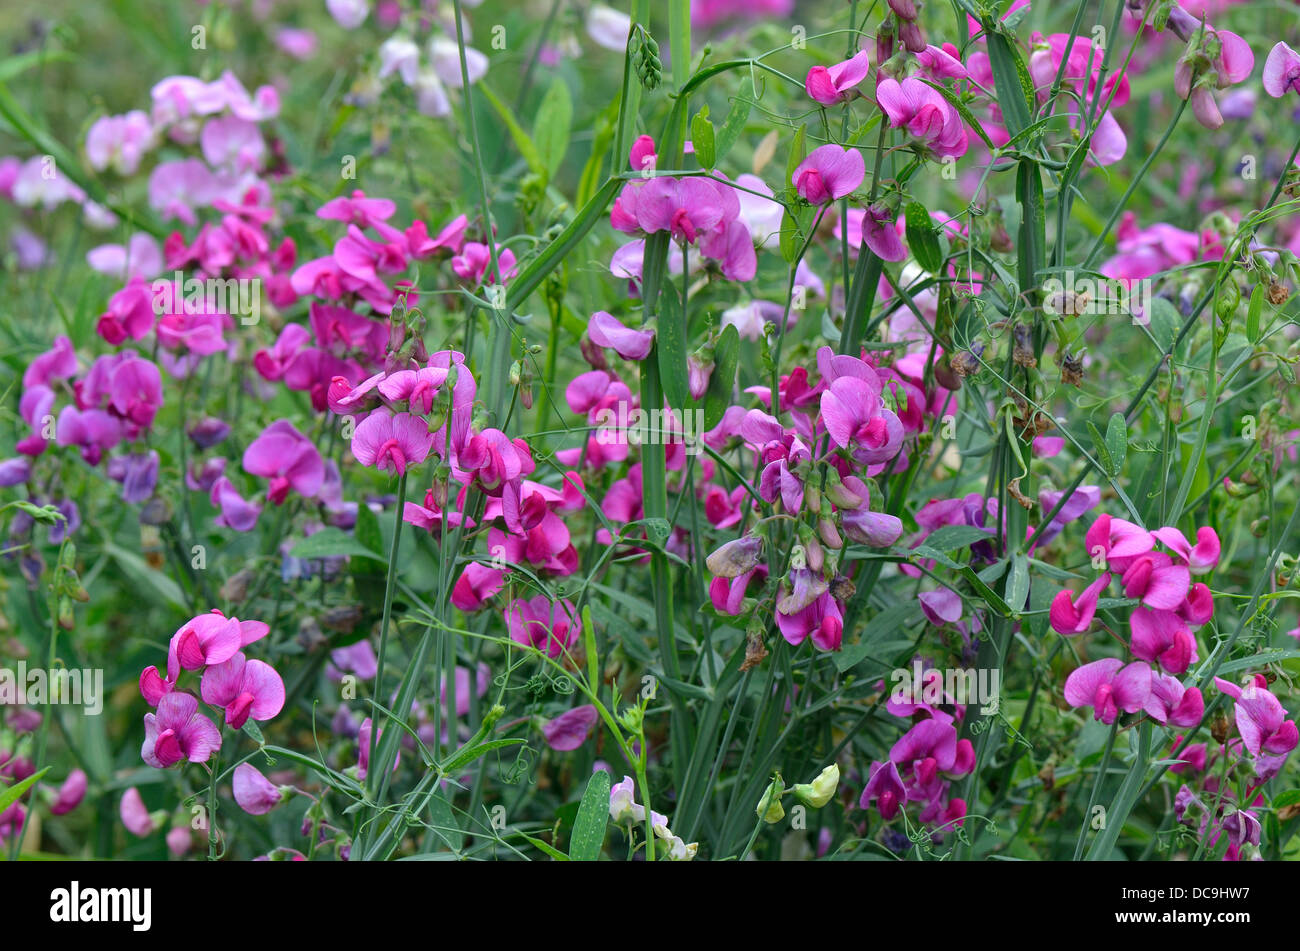 Viola everlasting pea fiori Lathyrus latifolius Foto Stock